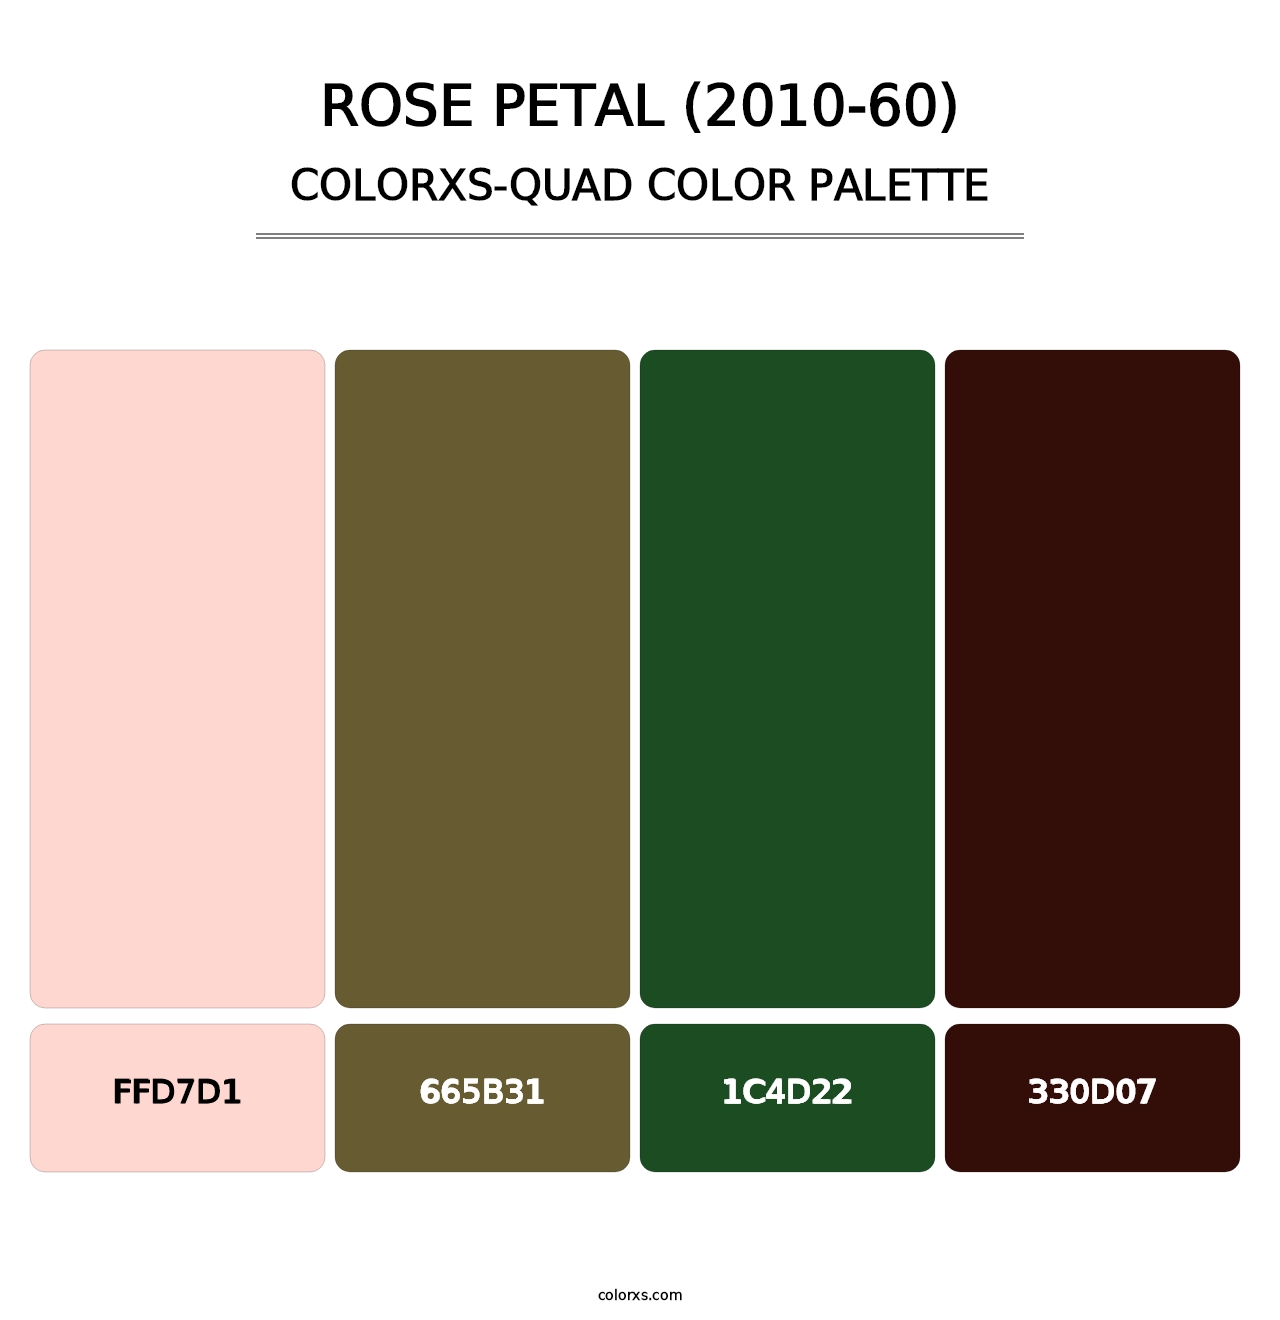 Rose Petal (2010-60) - Colorxs Quad Palette